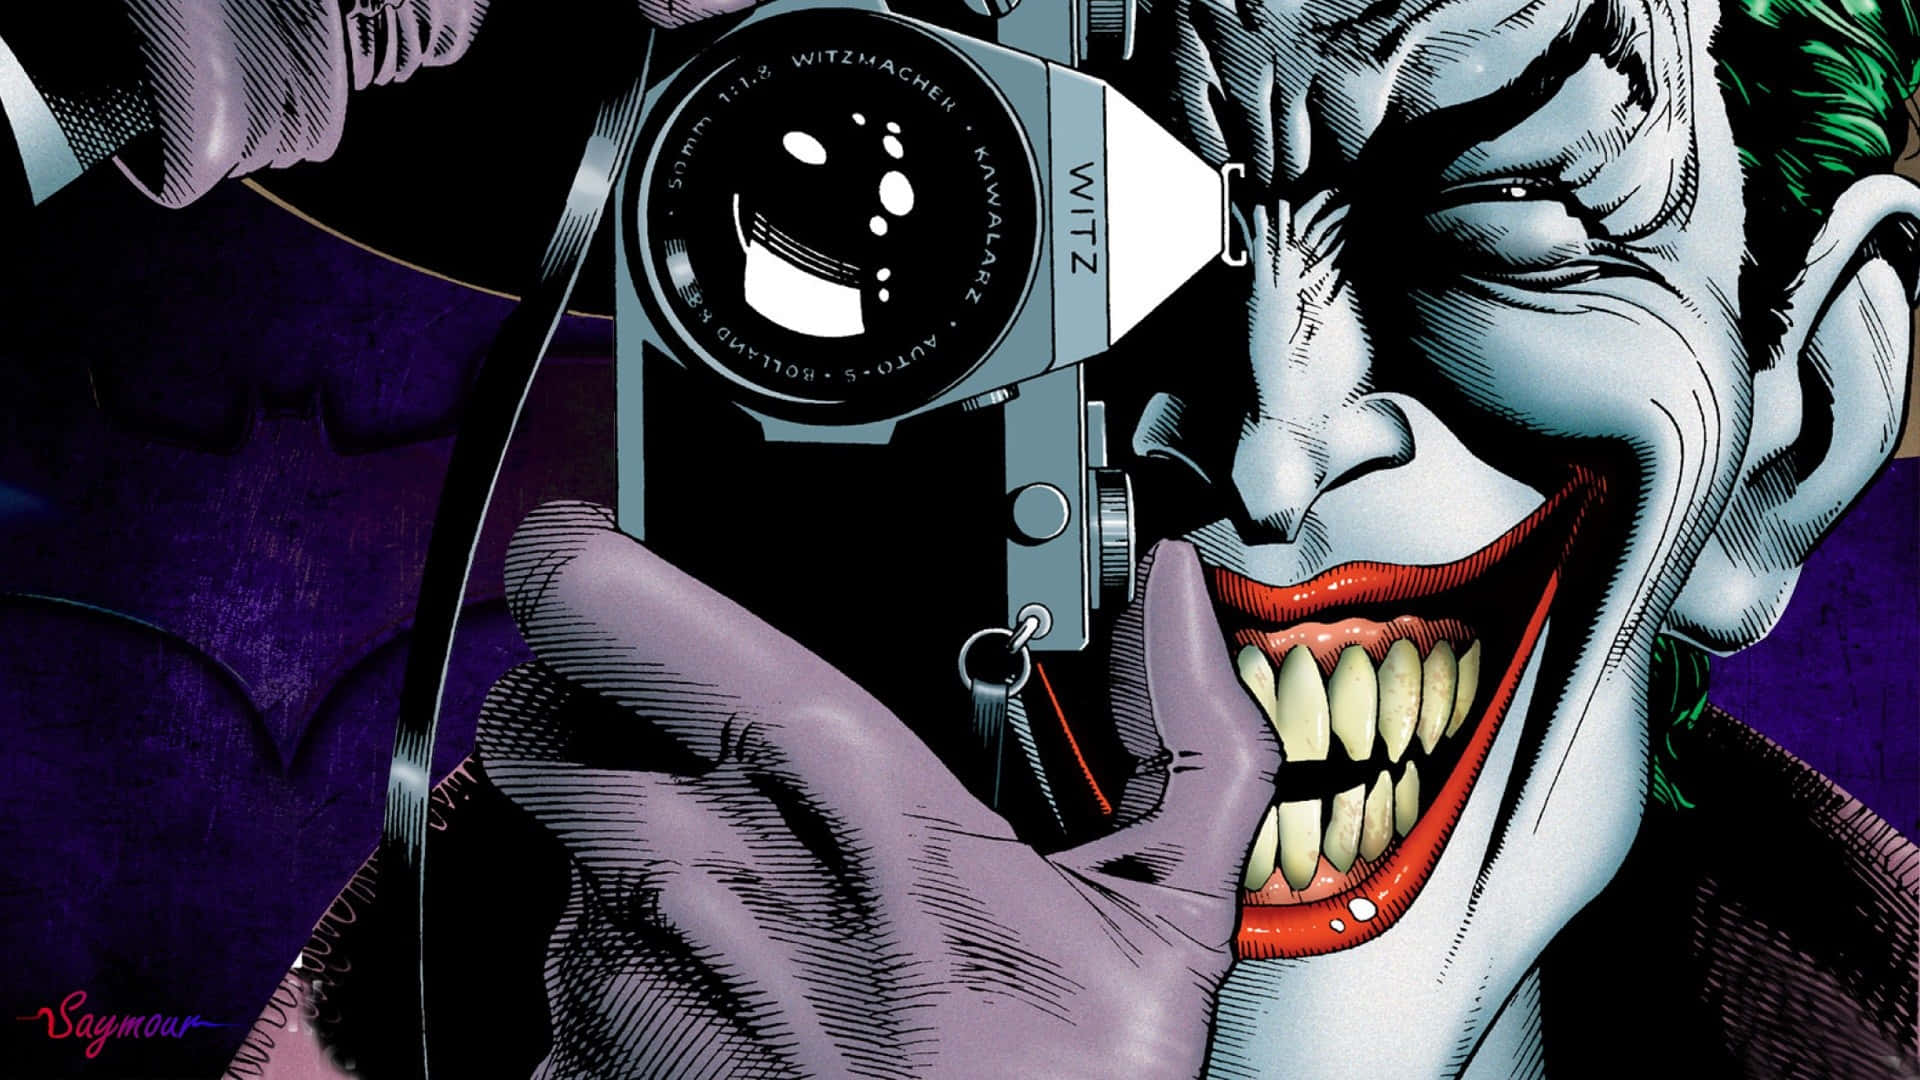 Joker Pfp With Camera Wallpaper